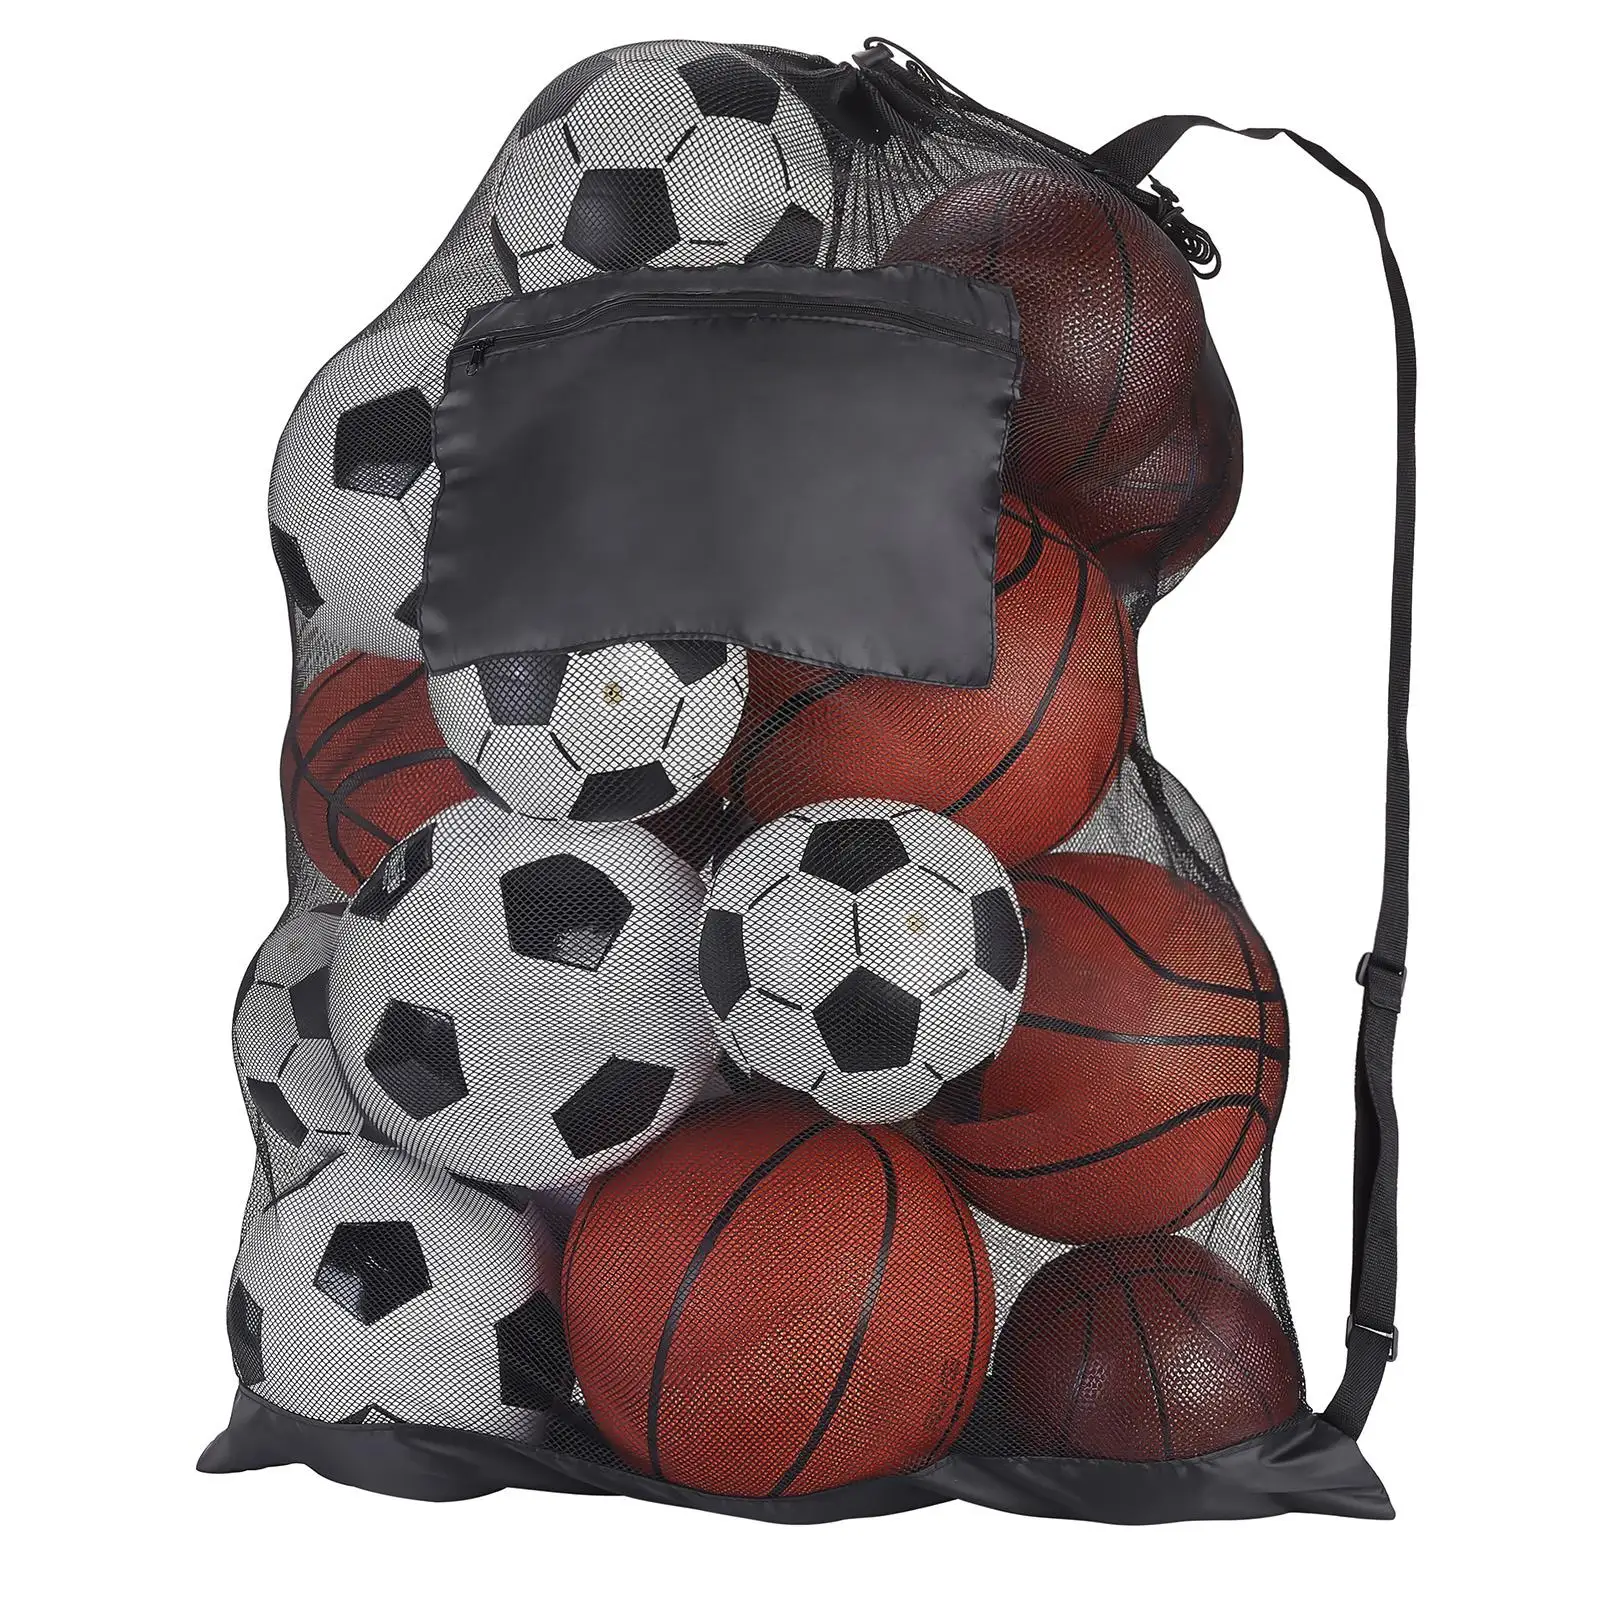 Basketball Shoulder Bag Tote Basketball Mesh Bag for Football Softball Rugby